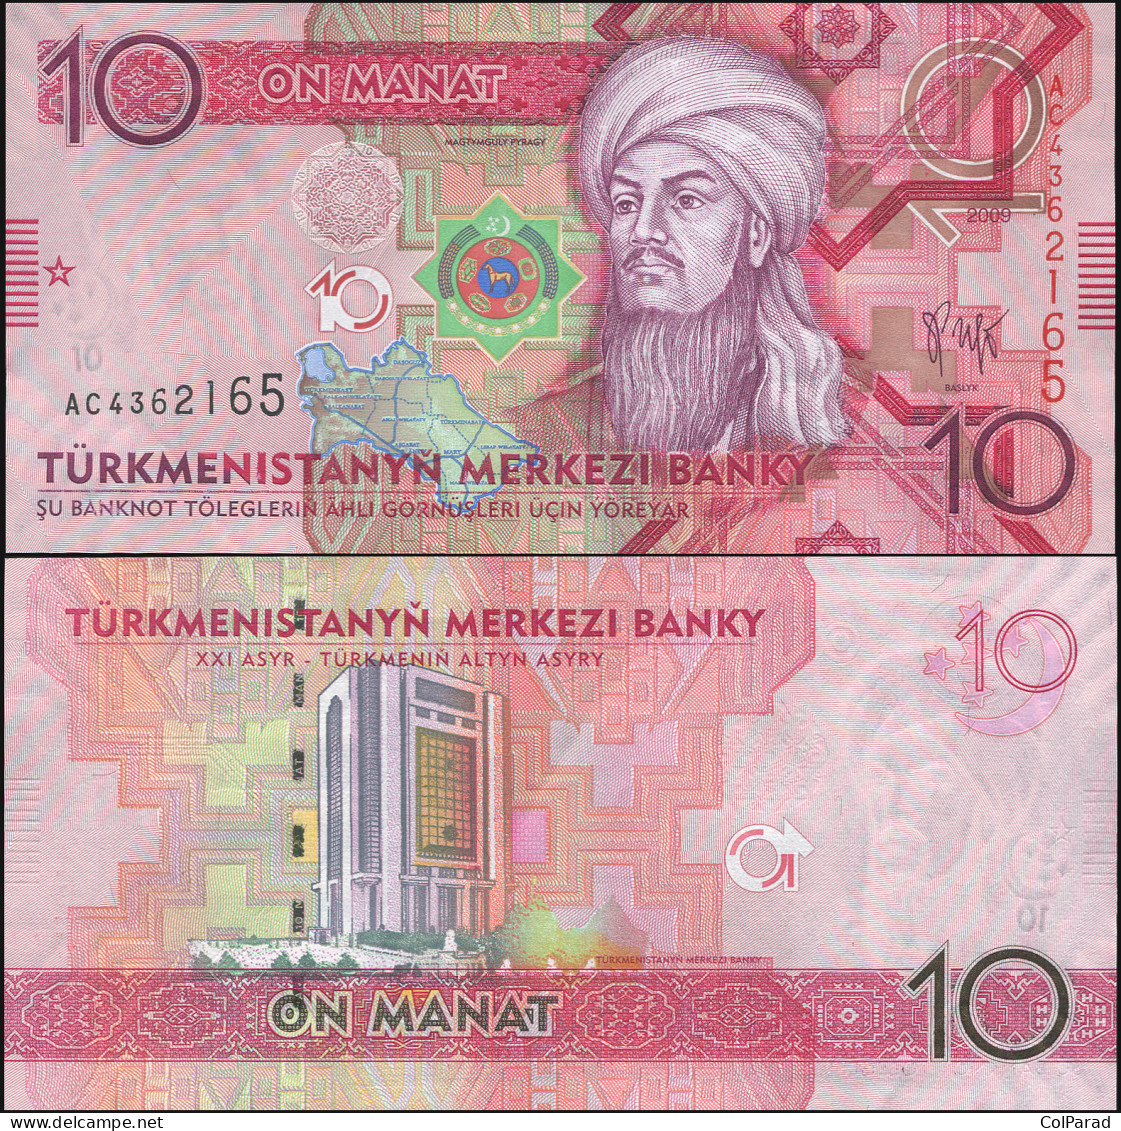 TURKMENISTAN 10 MANAT - 2009 - Unc - P.24a Paper Banknote - Turkménistan